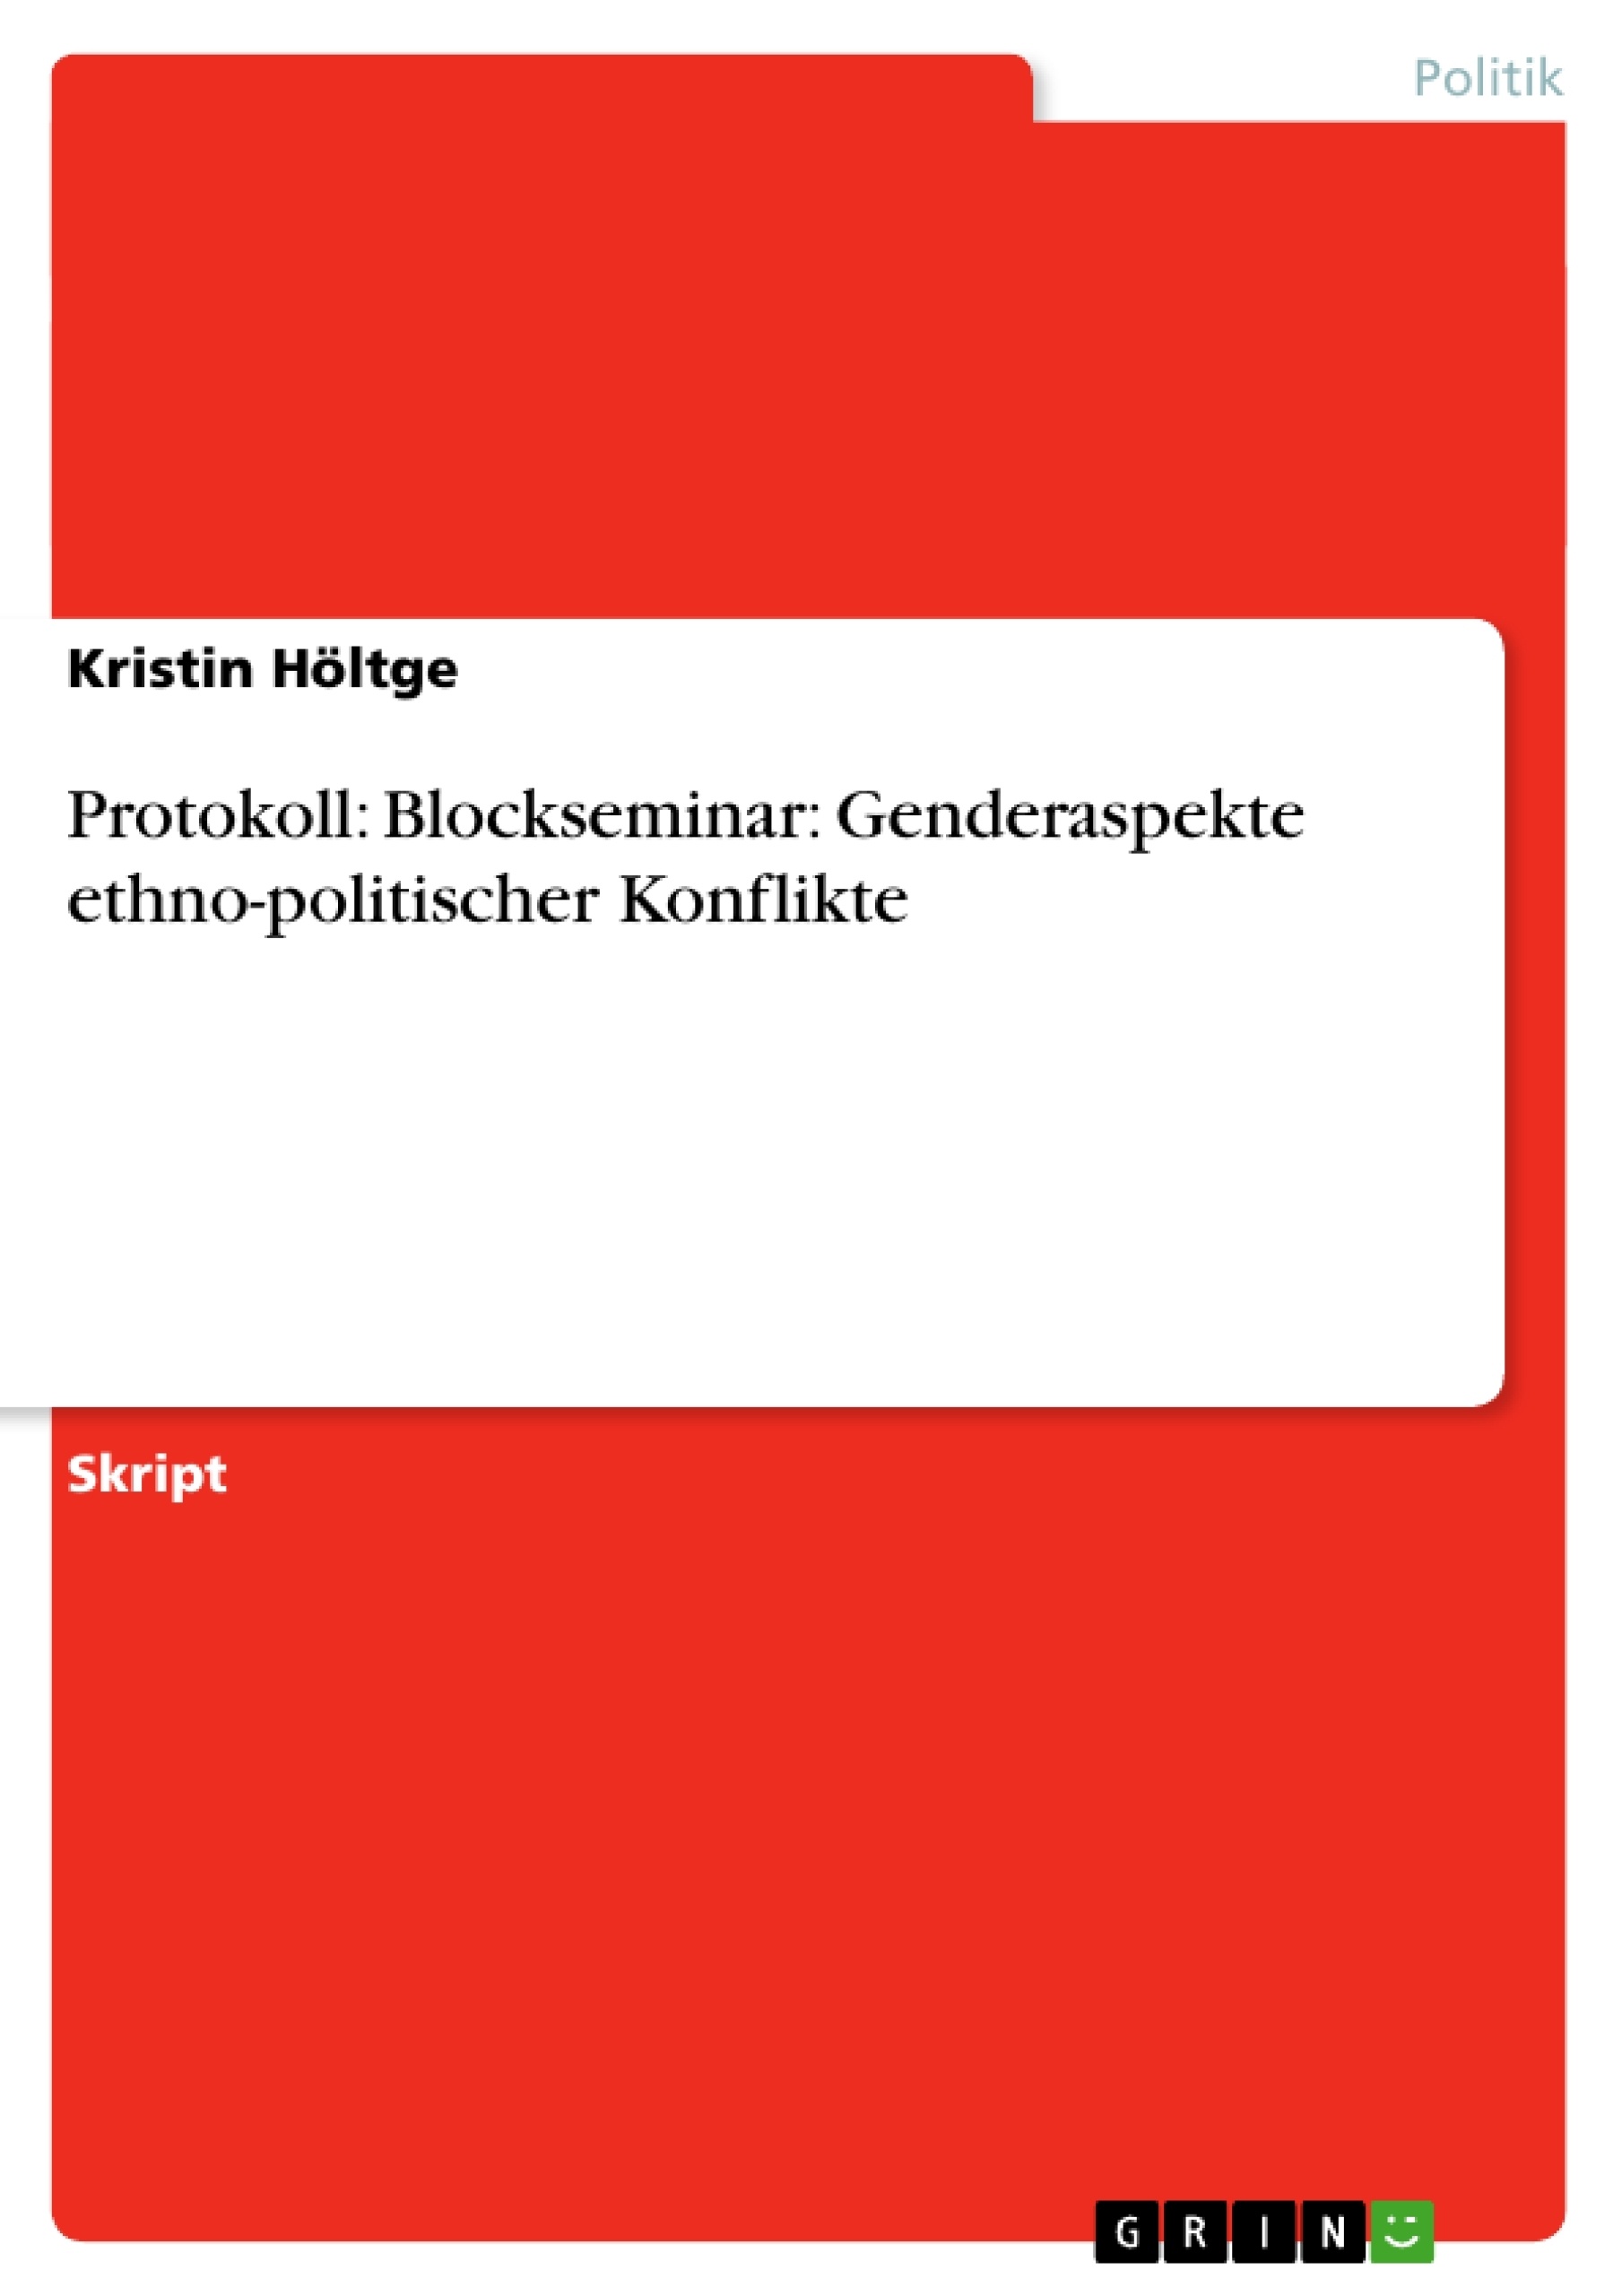 Title: Protokoll: Blockseminar: Genderaspekte ethno-politischer Konflikte